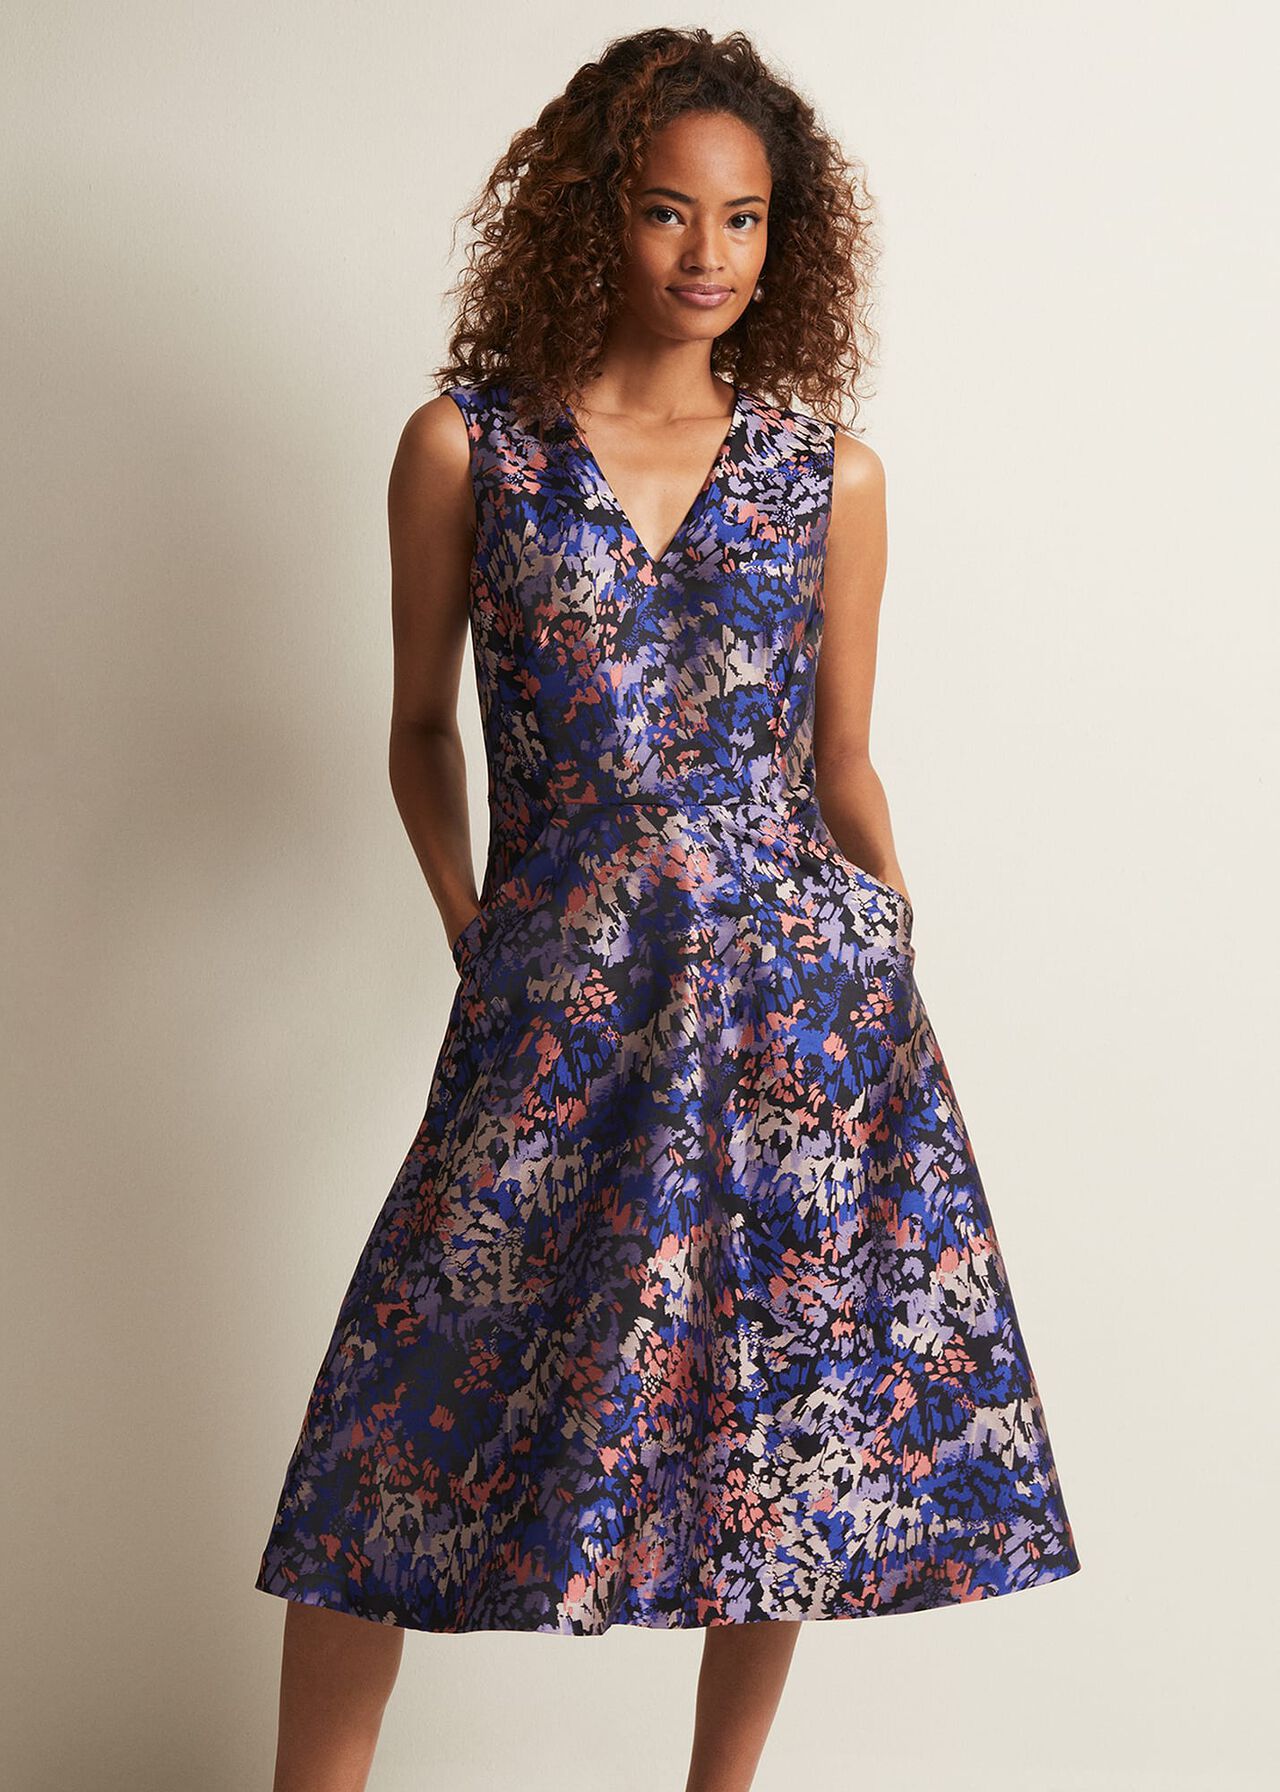 Adonia Abstract Jacquard Dress